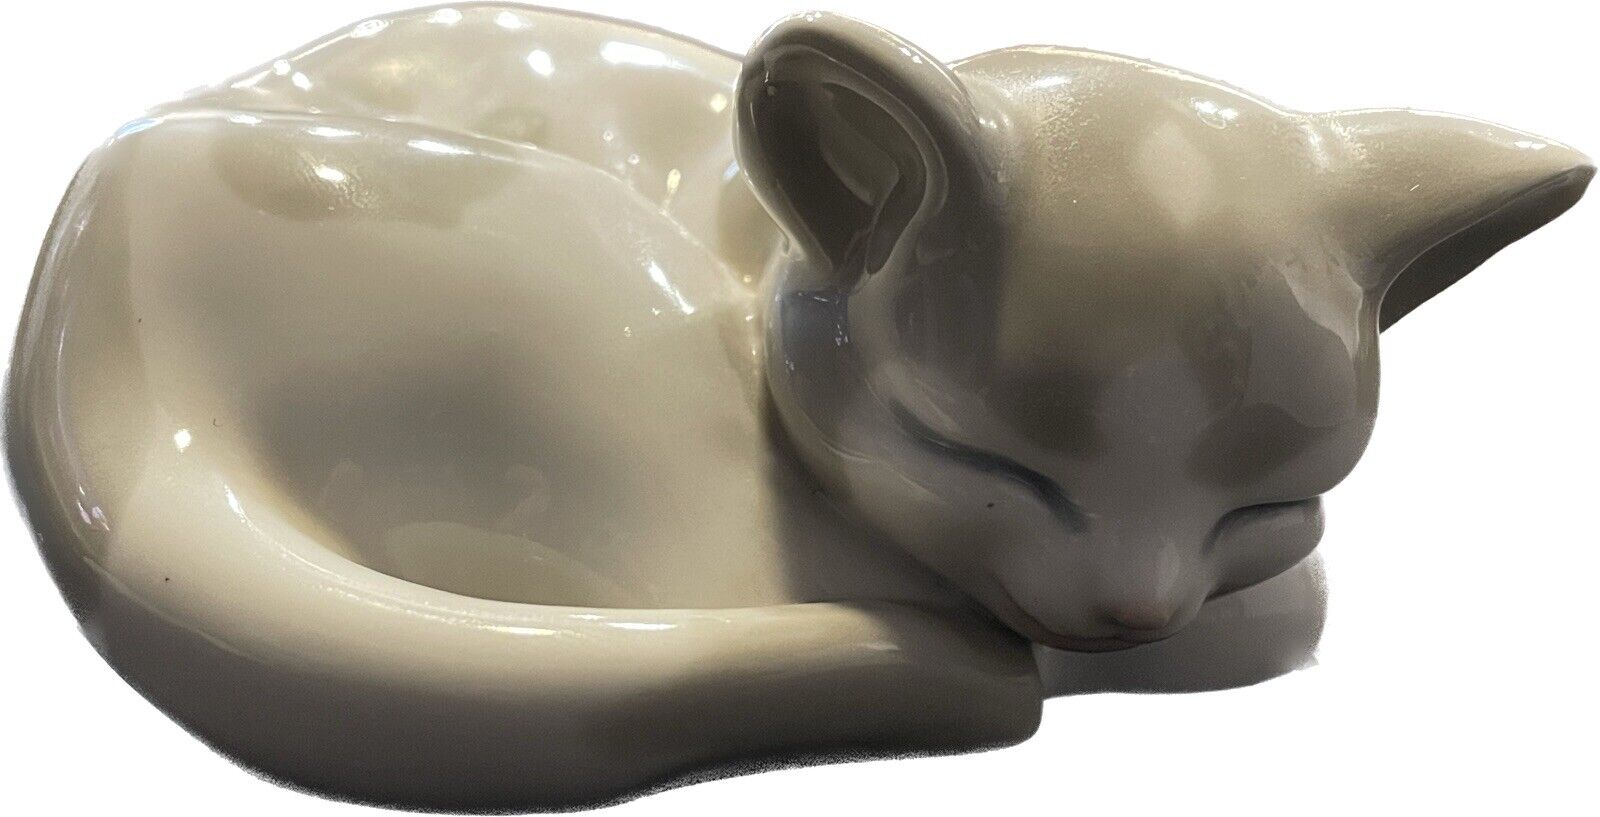 Gray & White Porcelain Ceramic Sleeping Kitten Made in Spain Small 3.5x5\